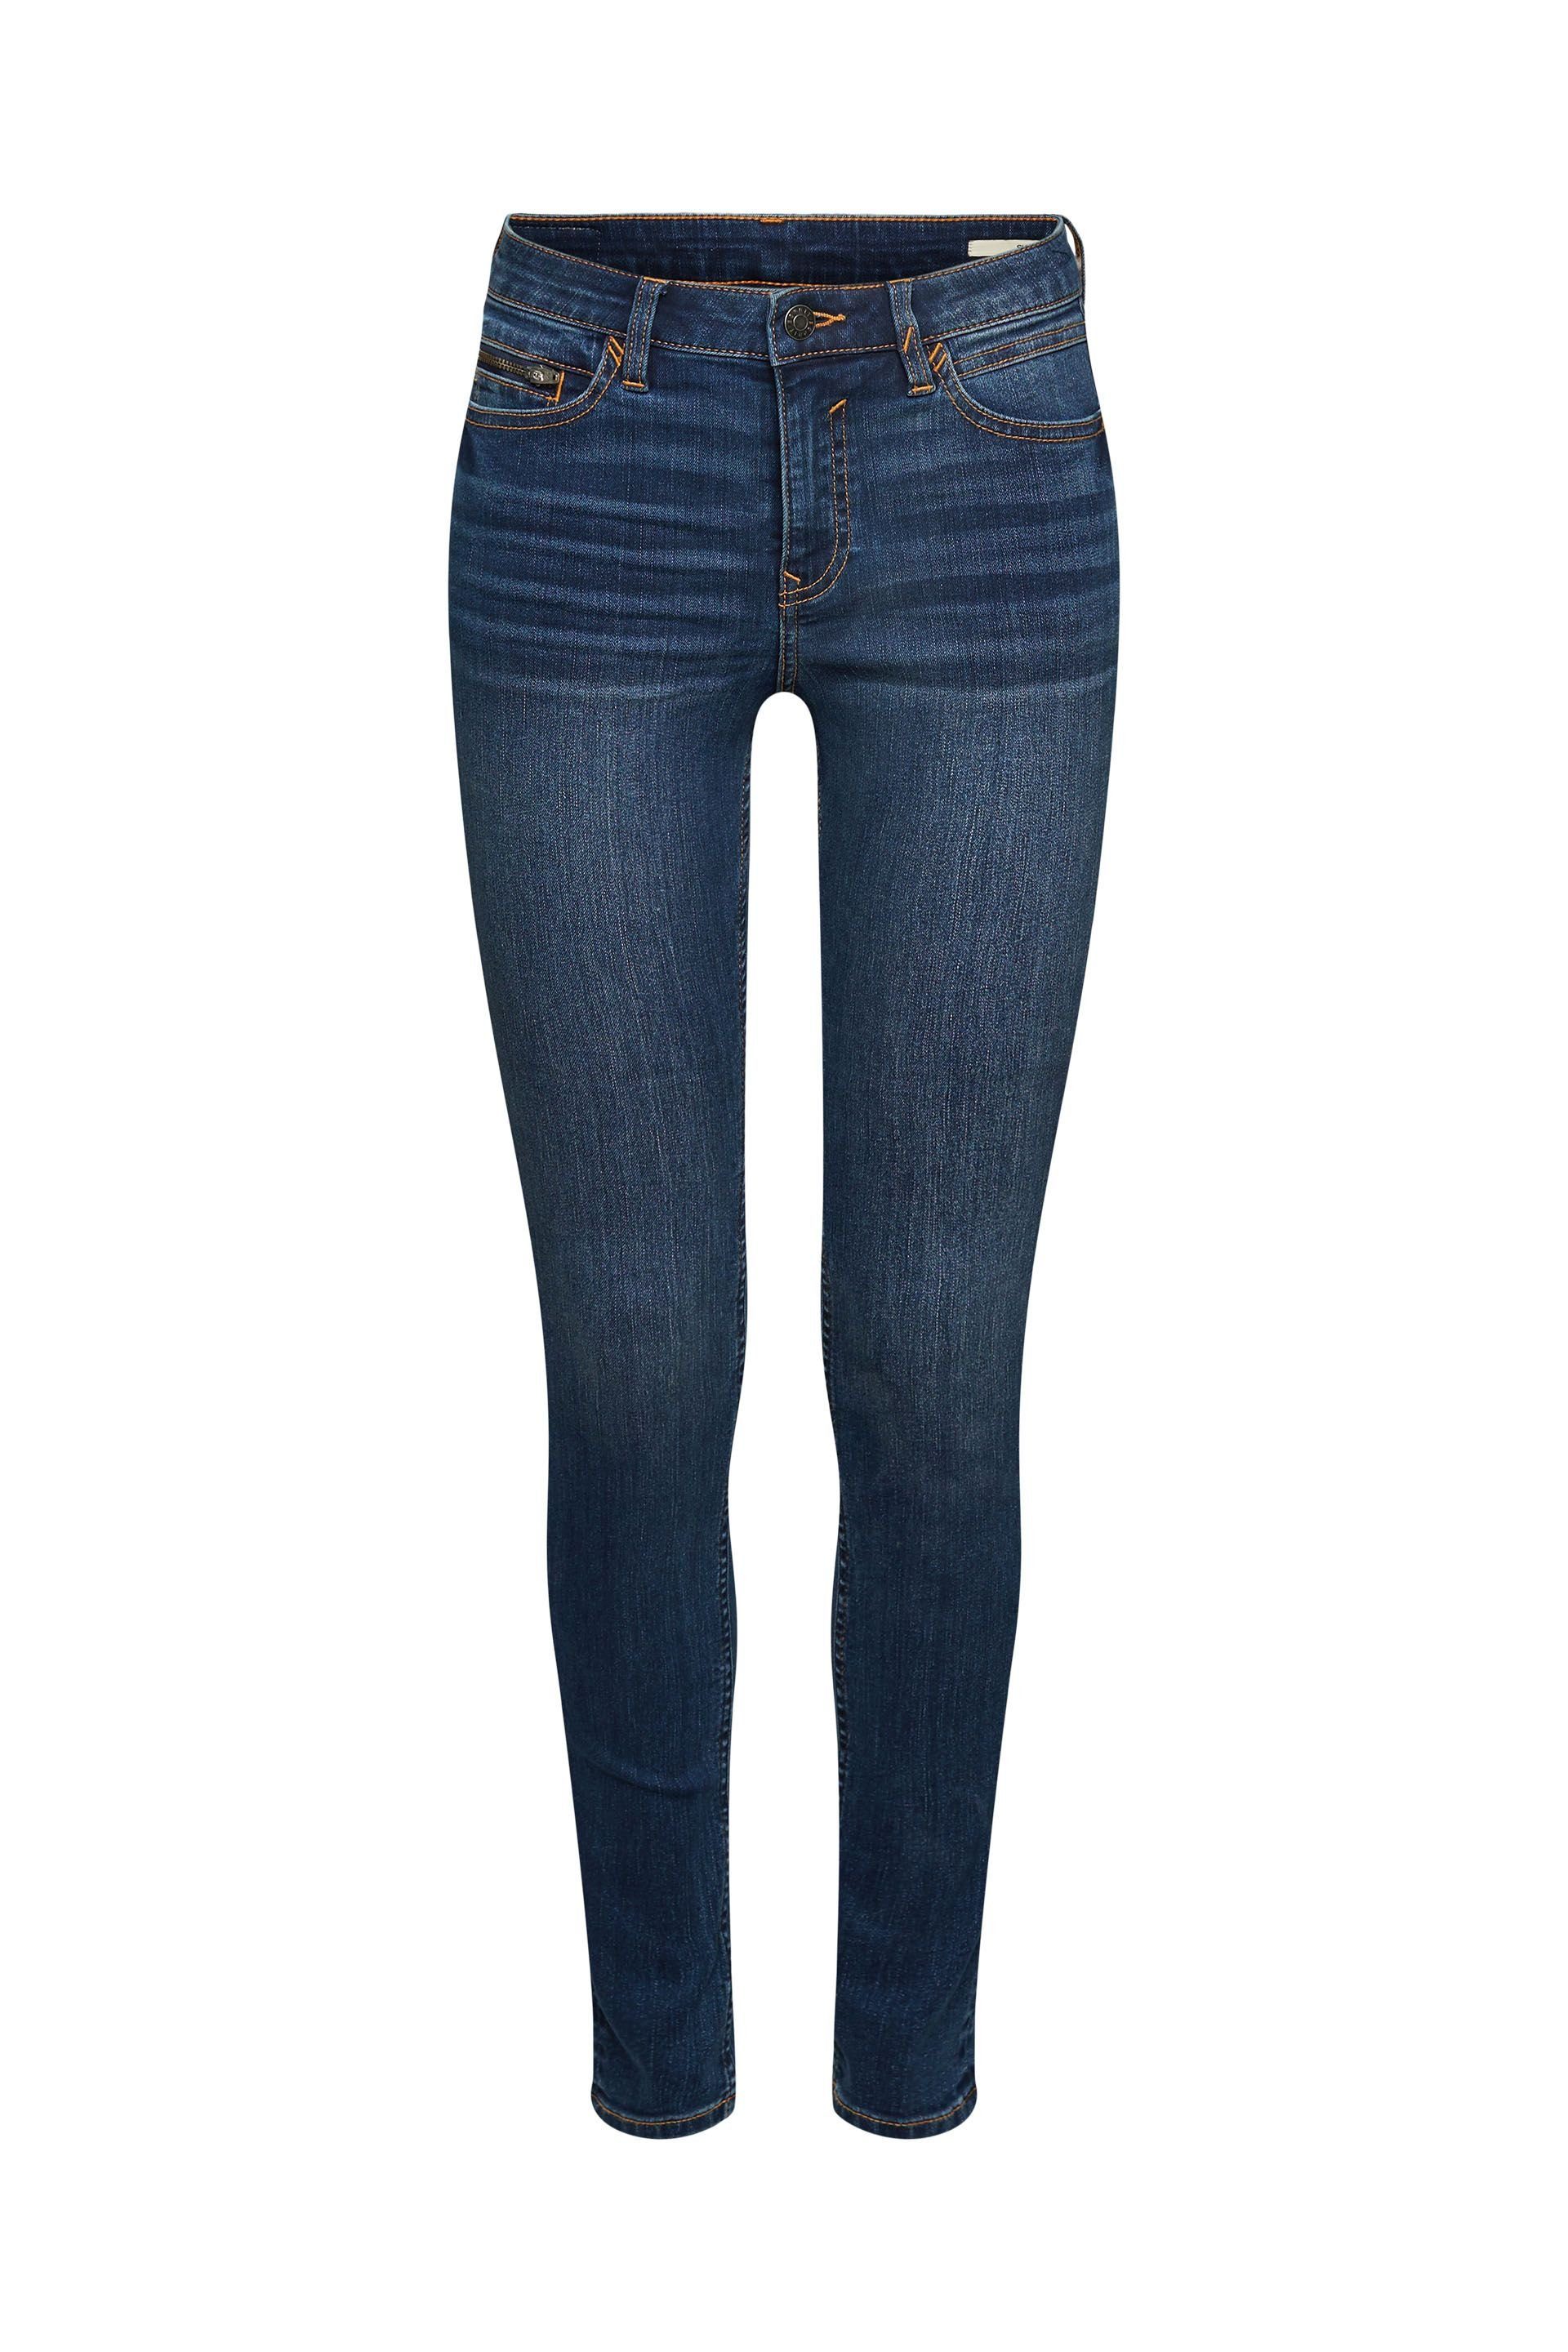 Esprit 5-Pocket-Jeans blue Skinny Fit Jeans washed dark